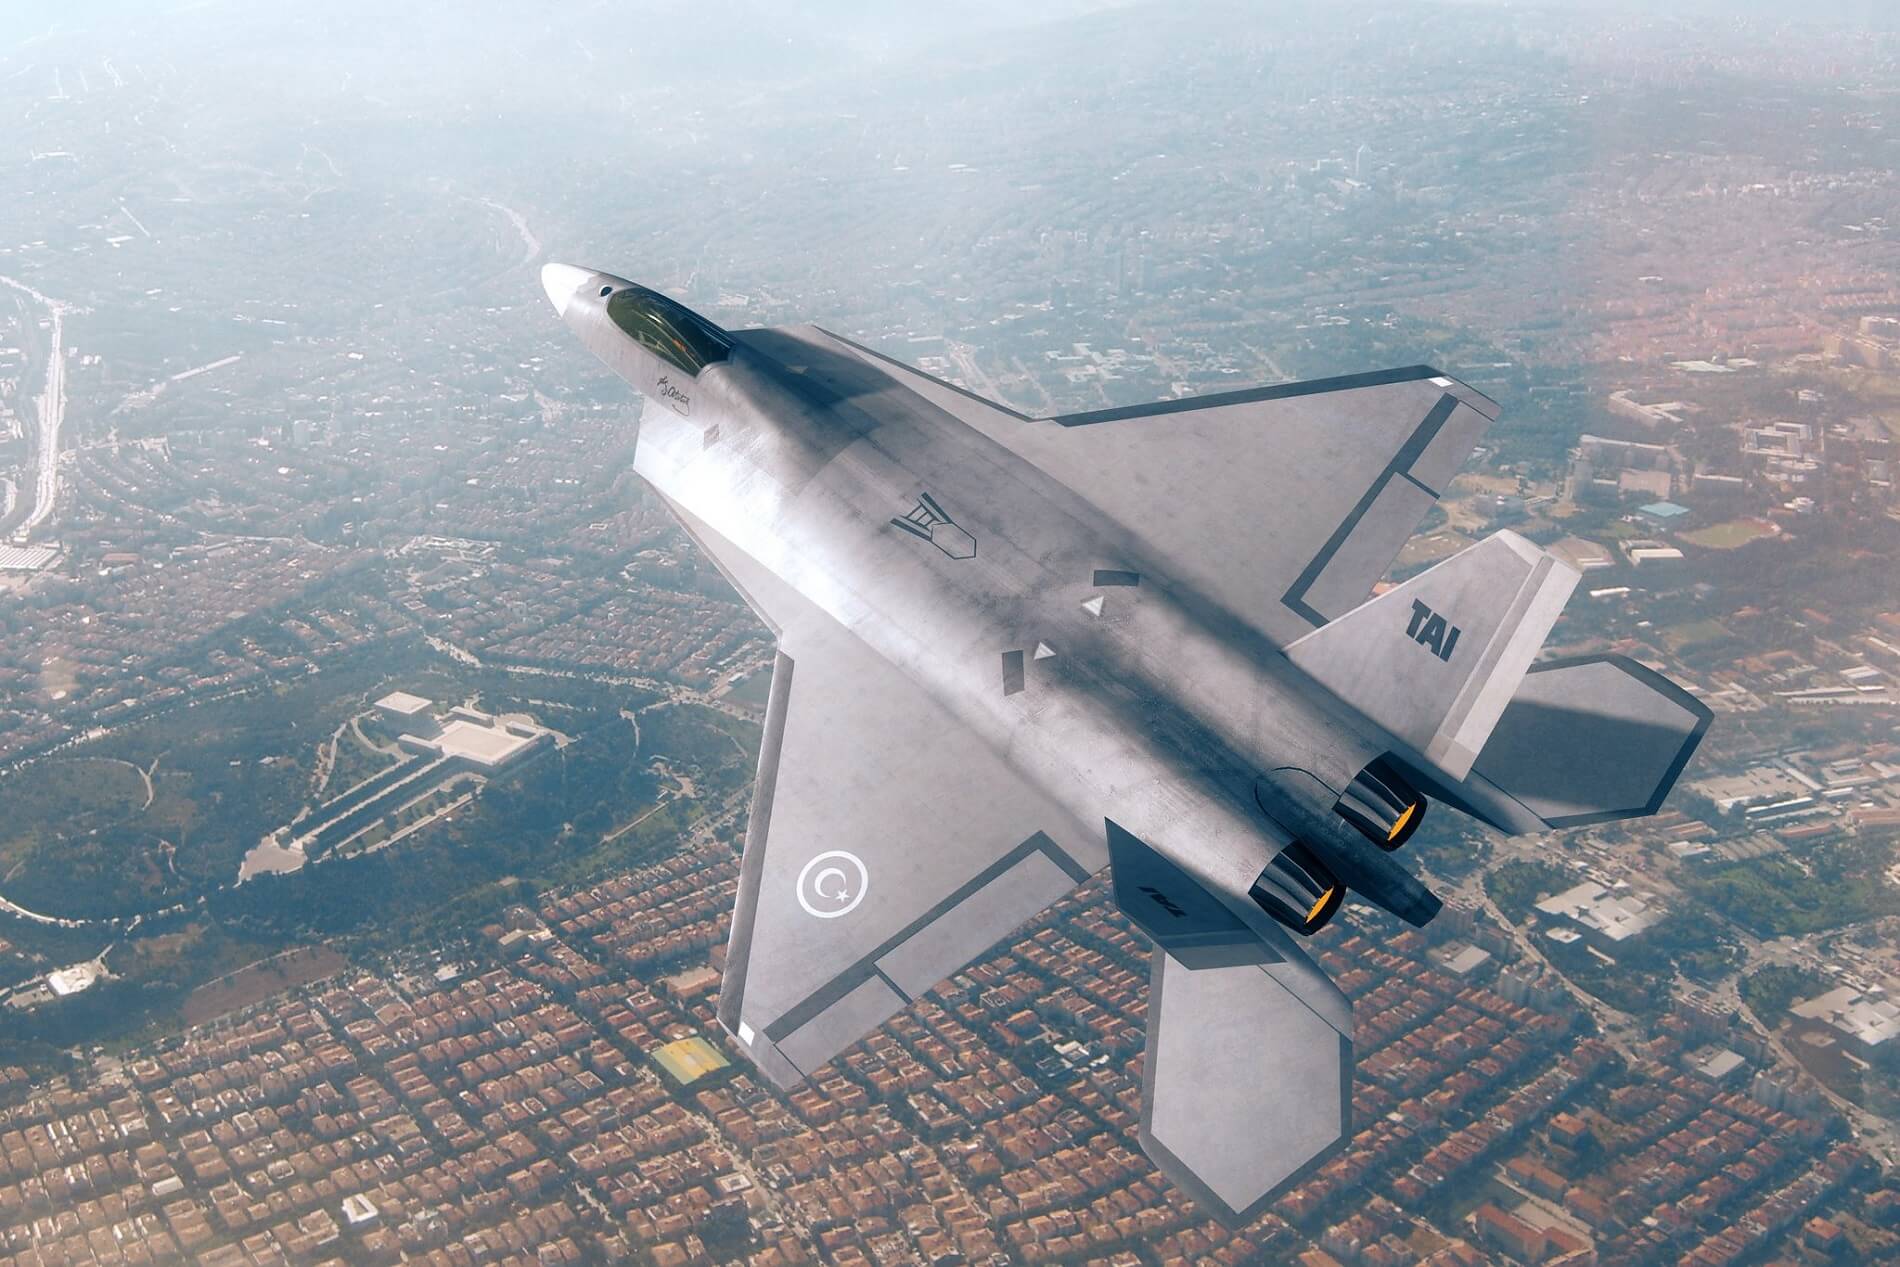 مشروع تركيا الطموح لتطوير مقاتلة الشبح من الجيل الخامس TAI TF-X أثبت أنه صعب للغاية بالنسبة لأنقرة watanserb.com